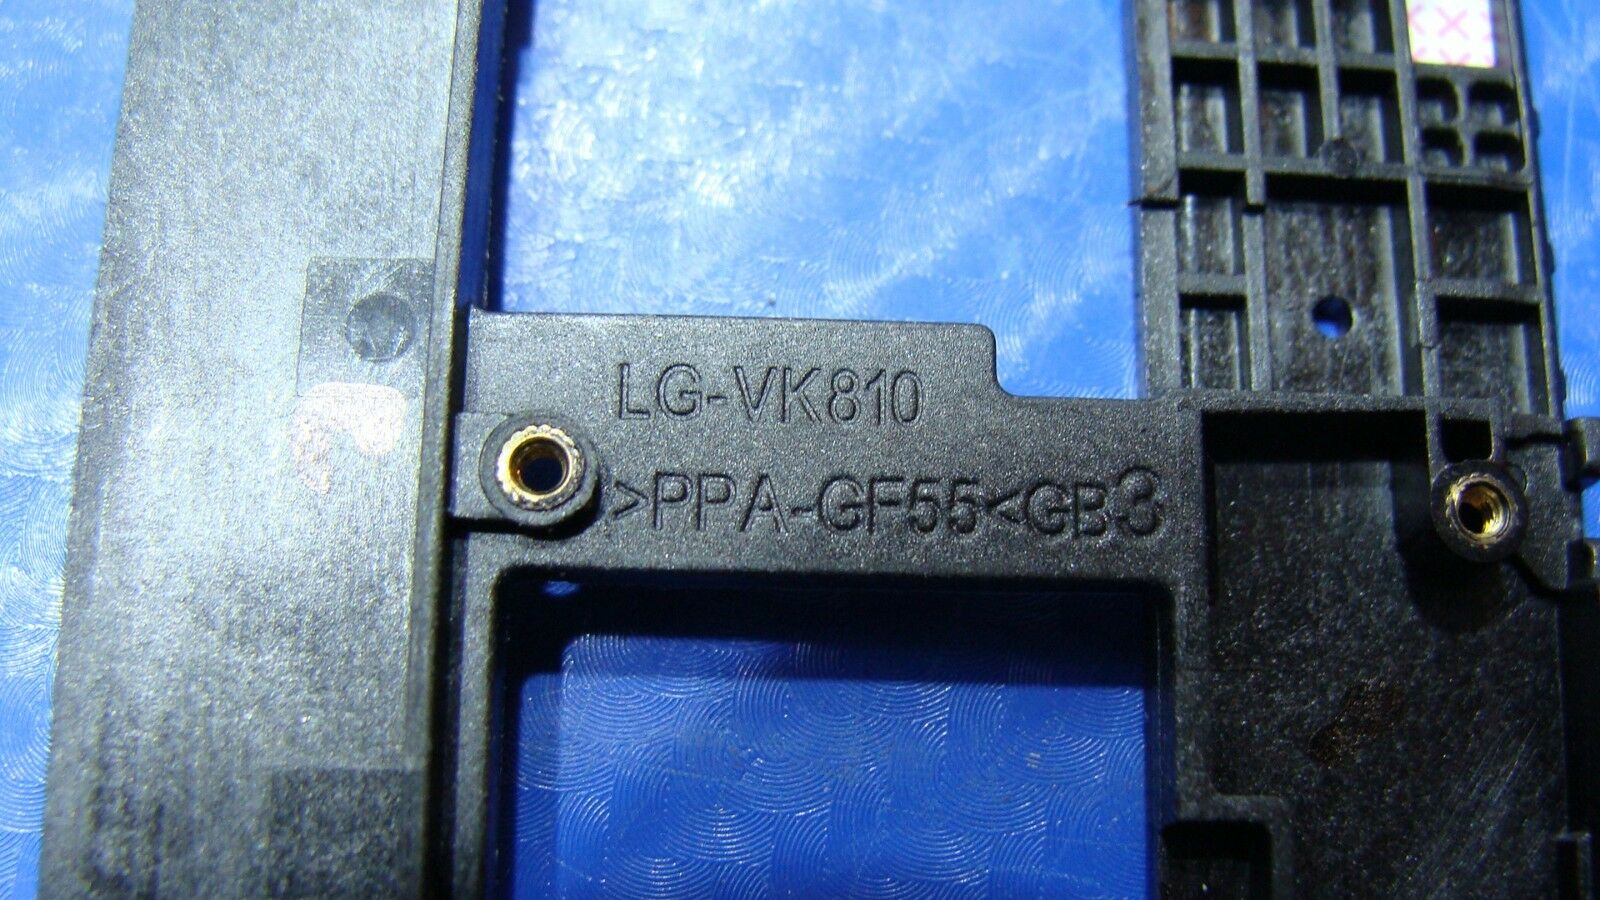 LG G Pad LTE VK810 8.3